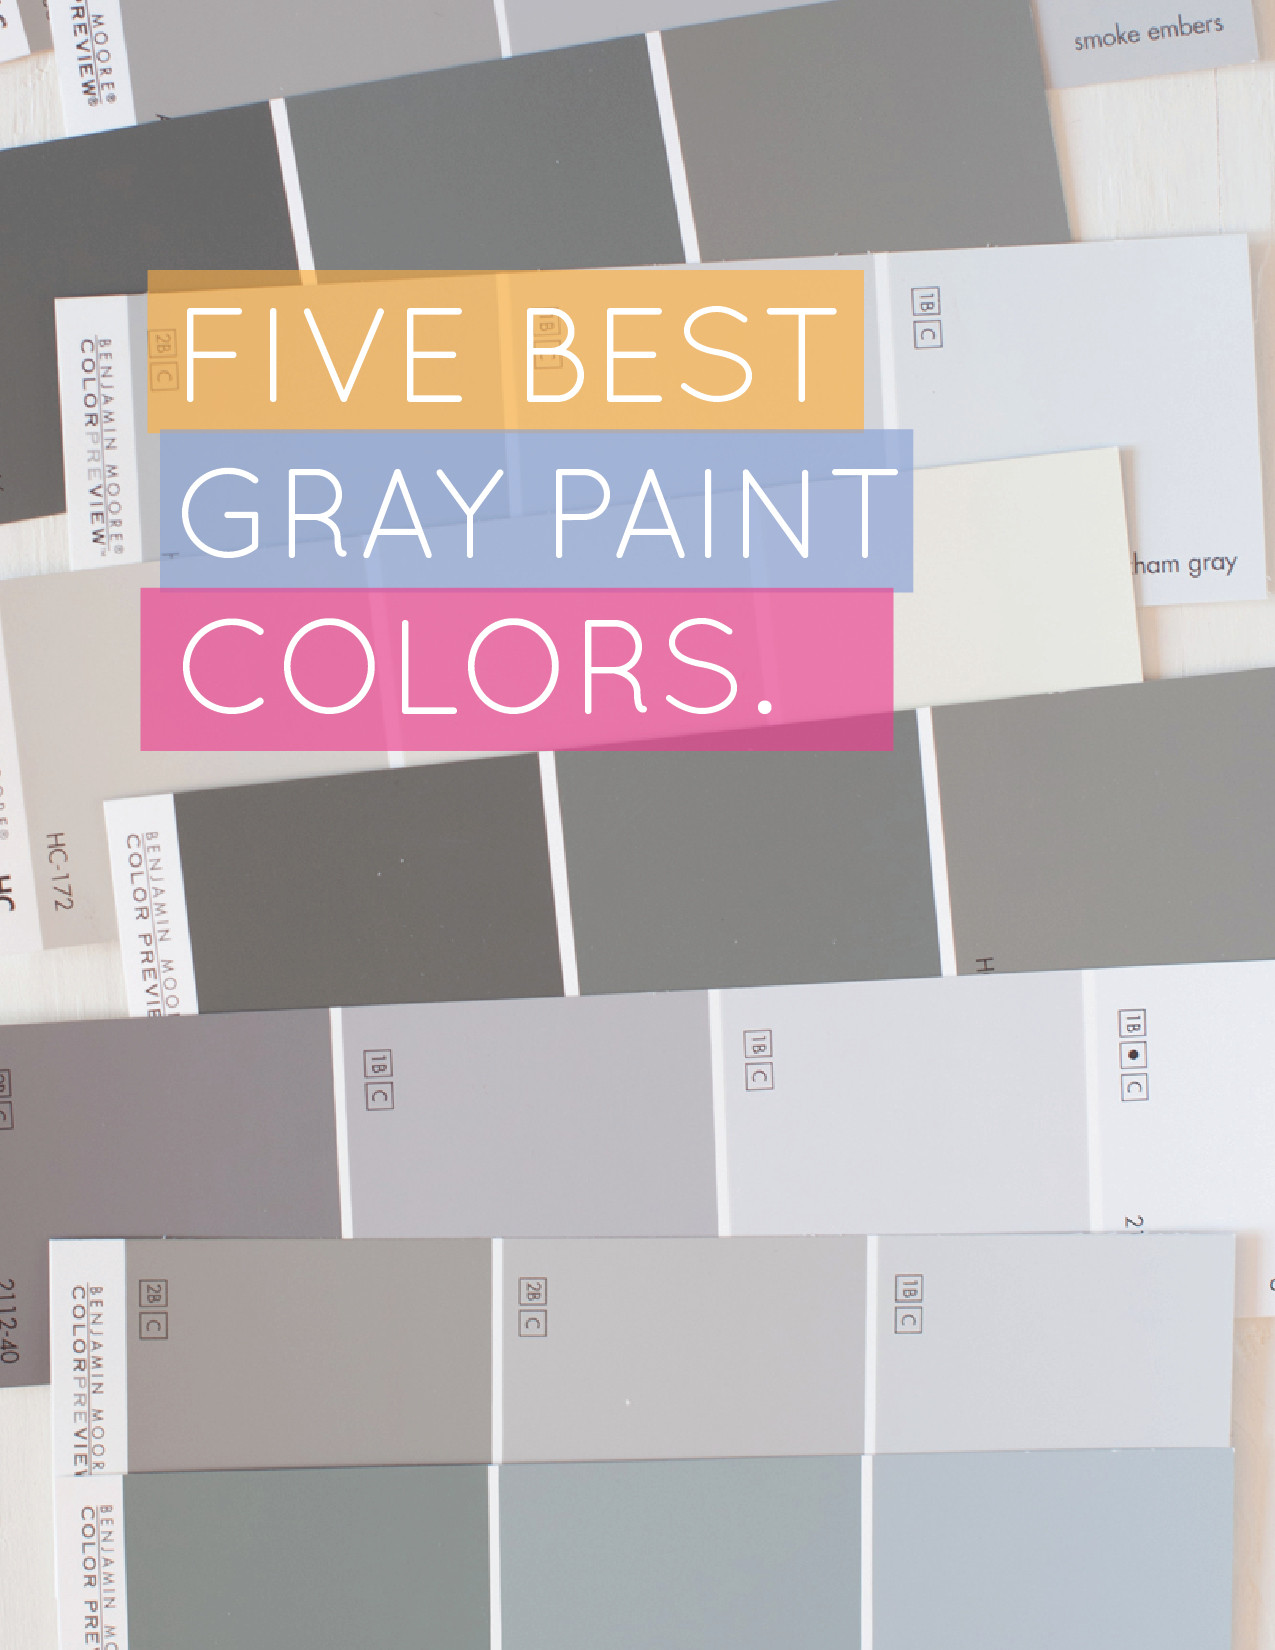 Best ideas about Best Gray Paint Colors
. Save or Pin Alice and Lois5 best gray paint colors Now.